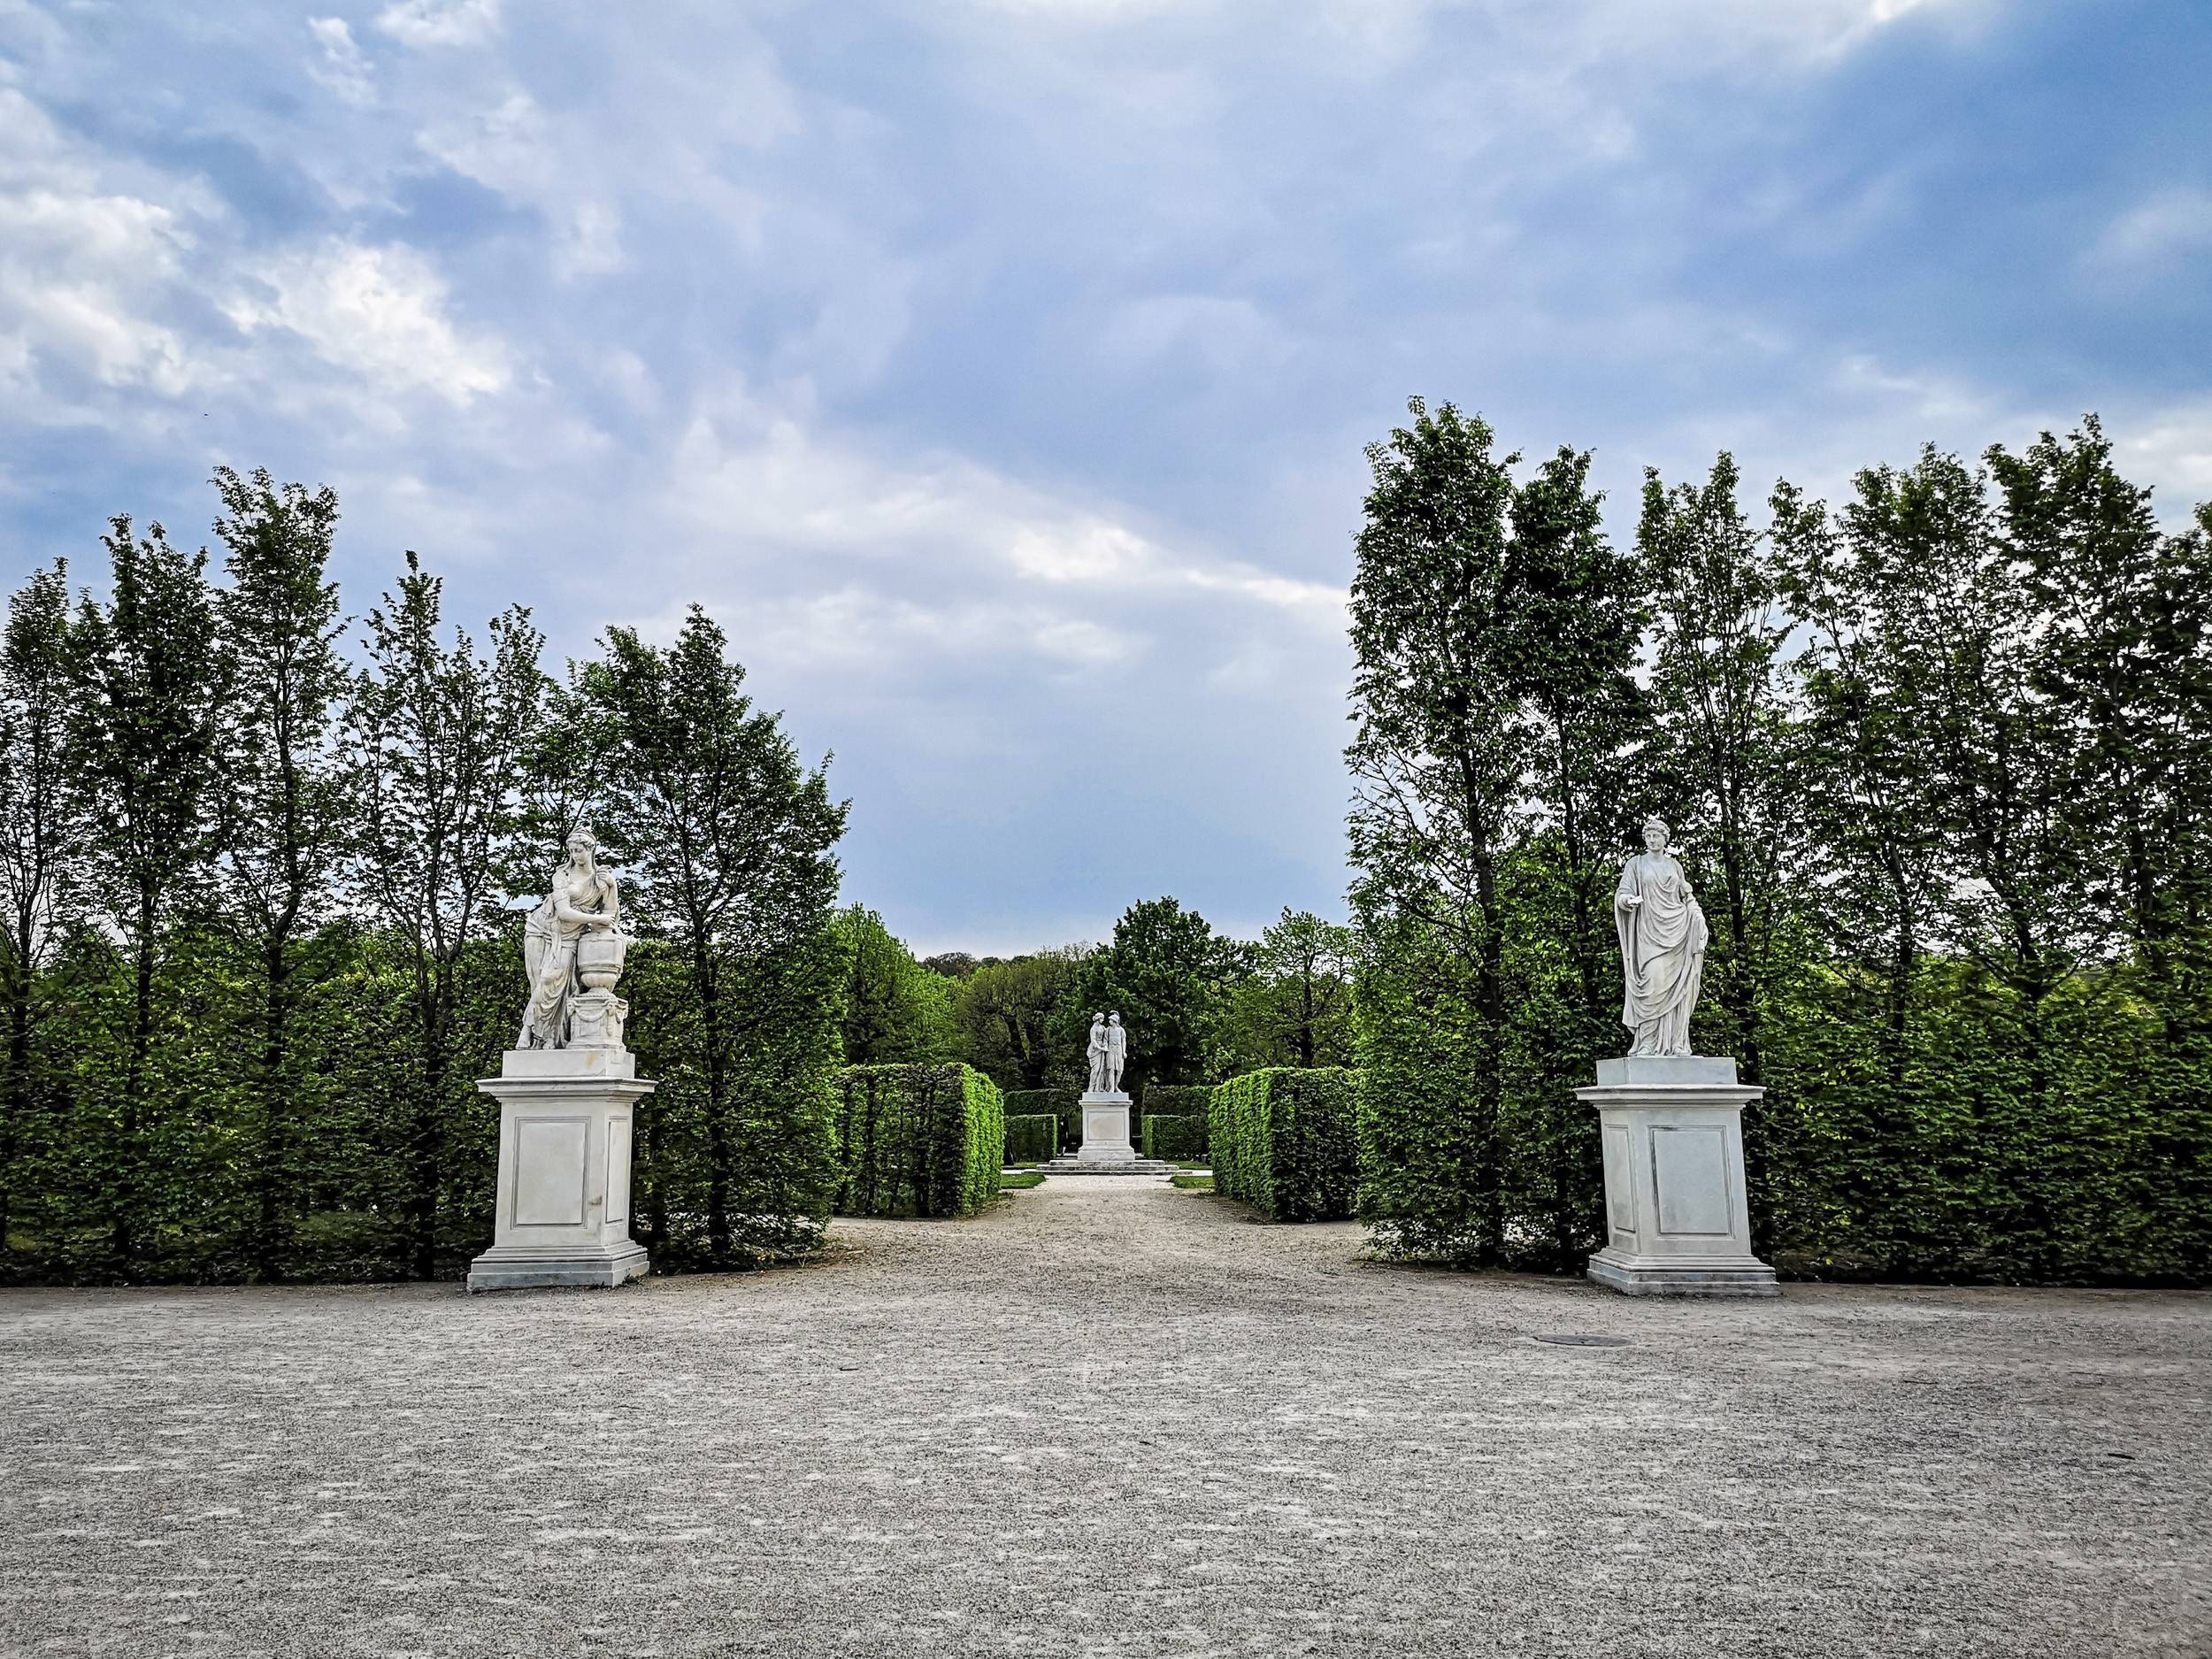 Statues of Hellenic heroes in Schönbrunn gardens, Vienna